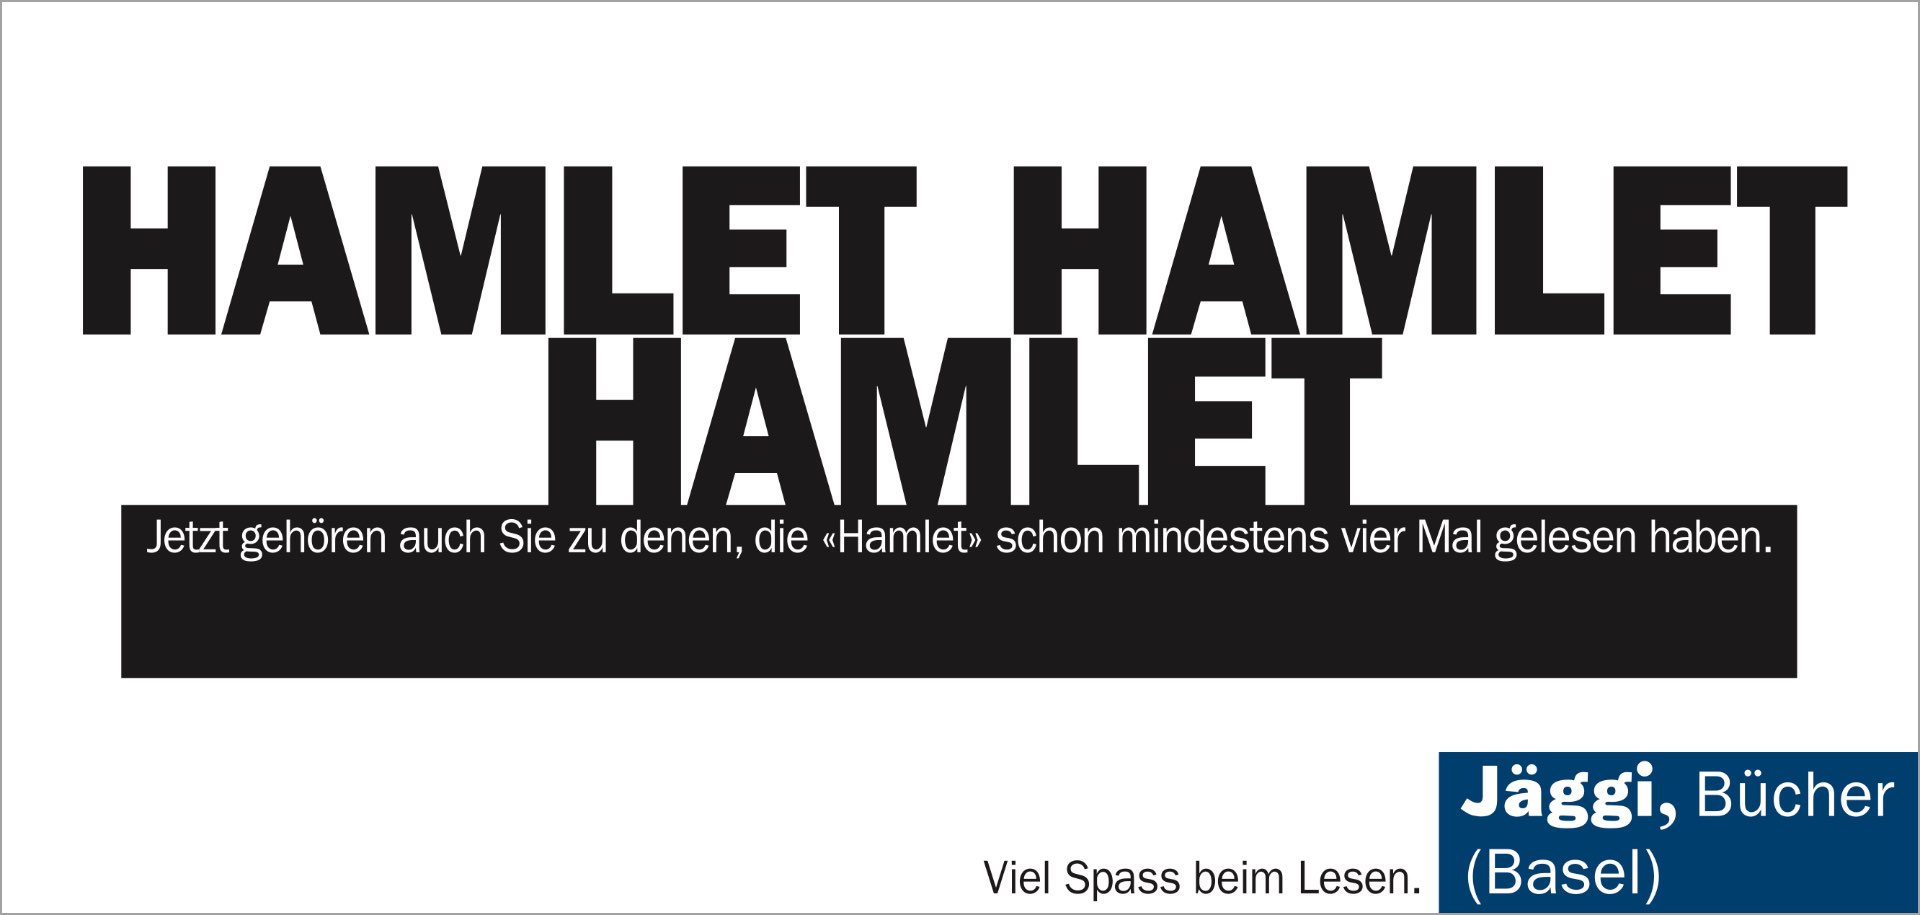 HAMLET, HAMILET, HAMLET